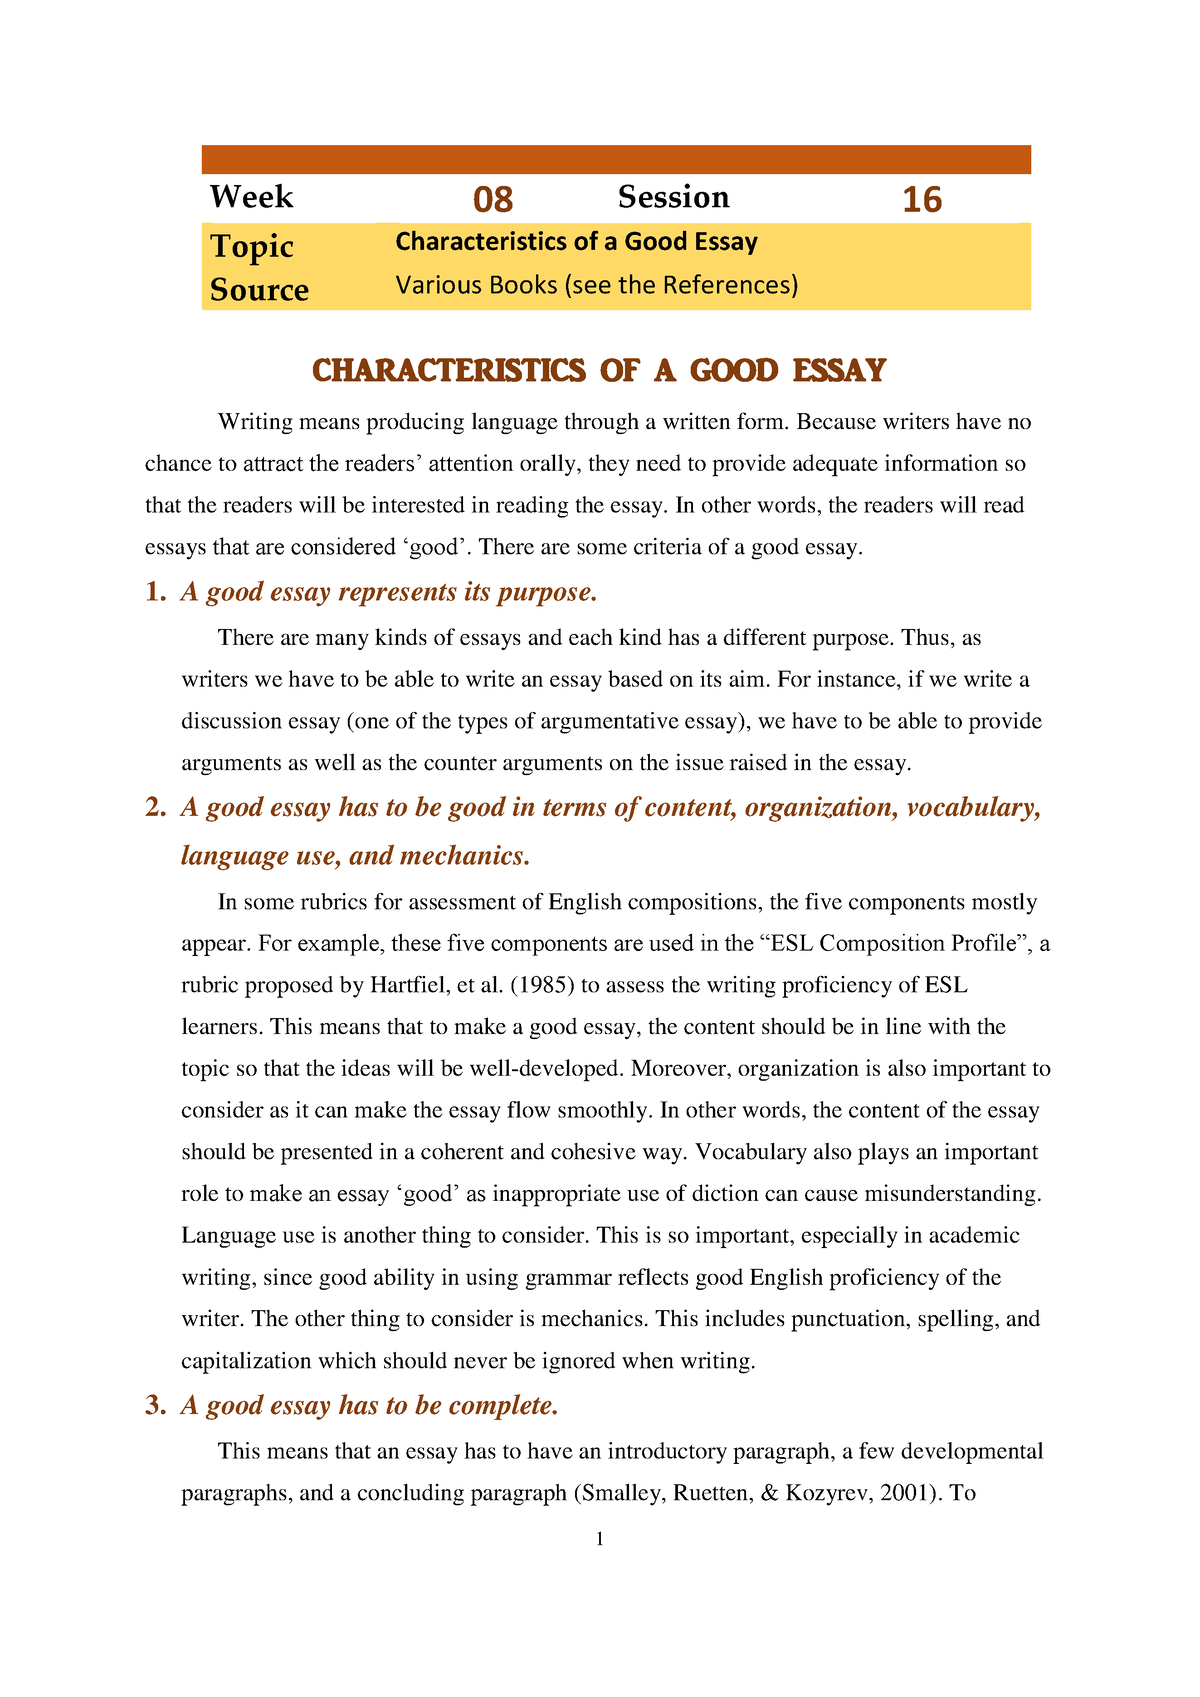 a good essay has the characteristics except